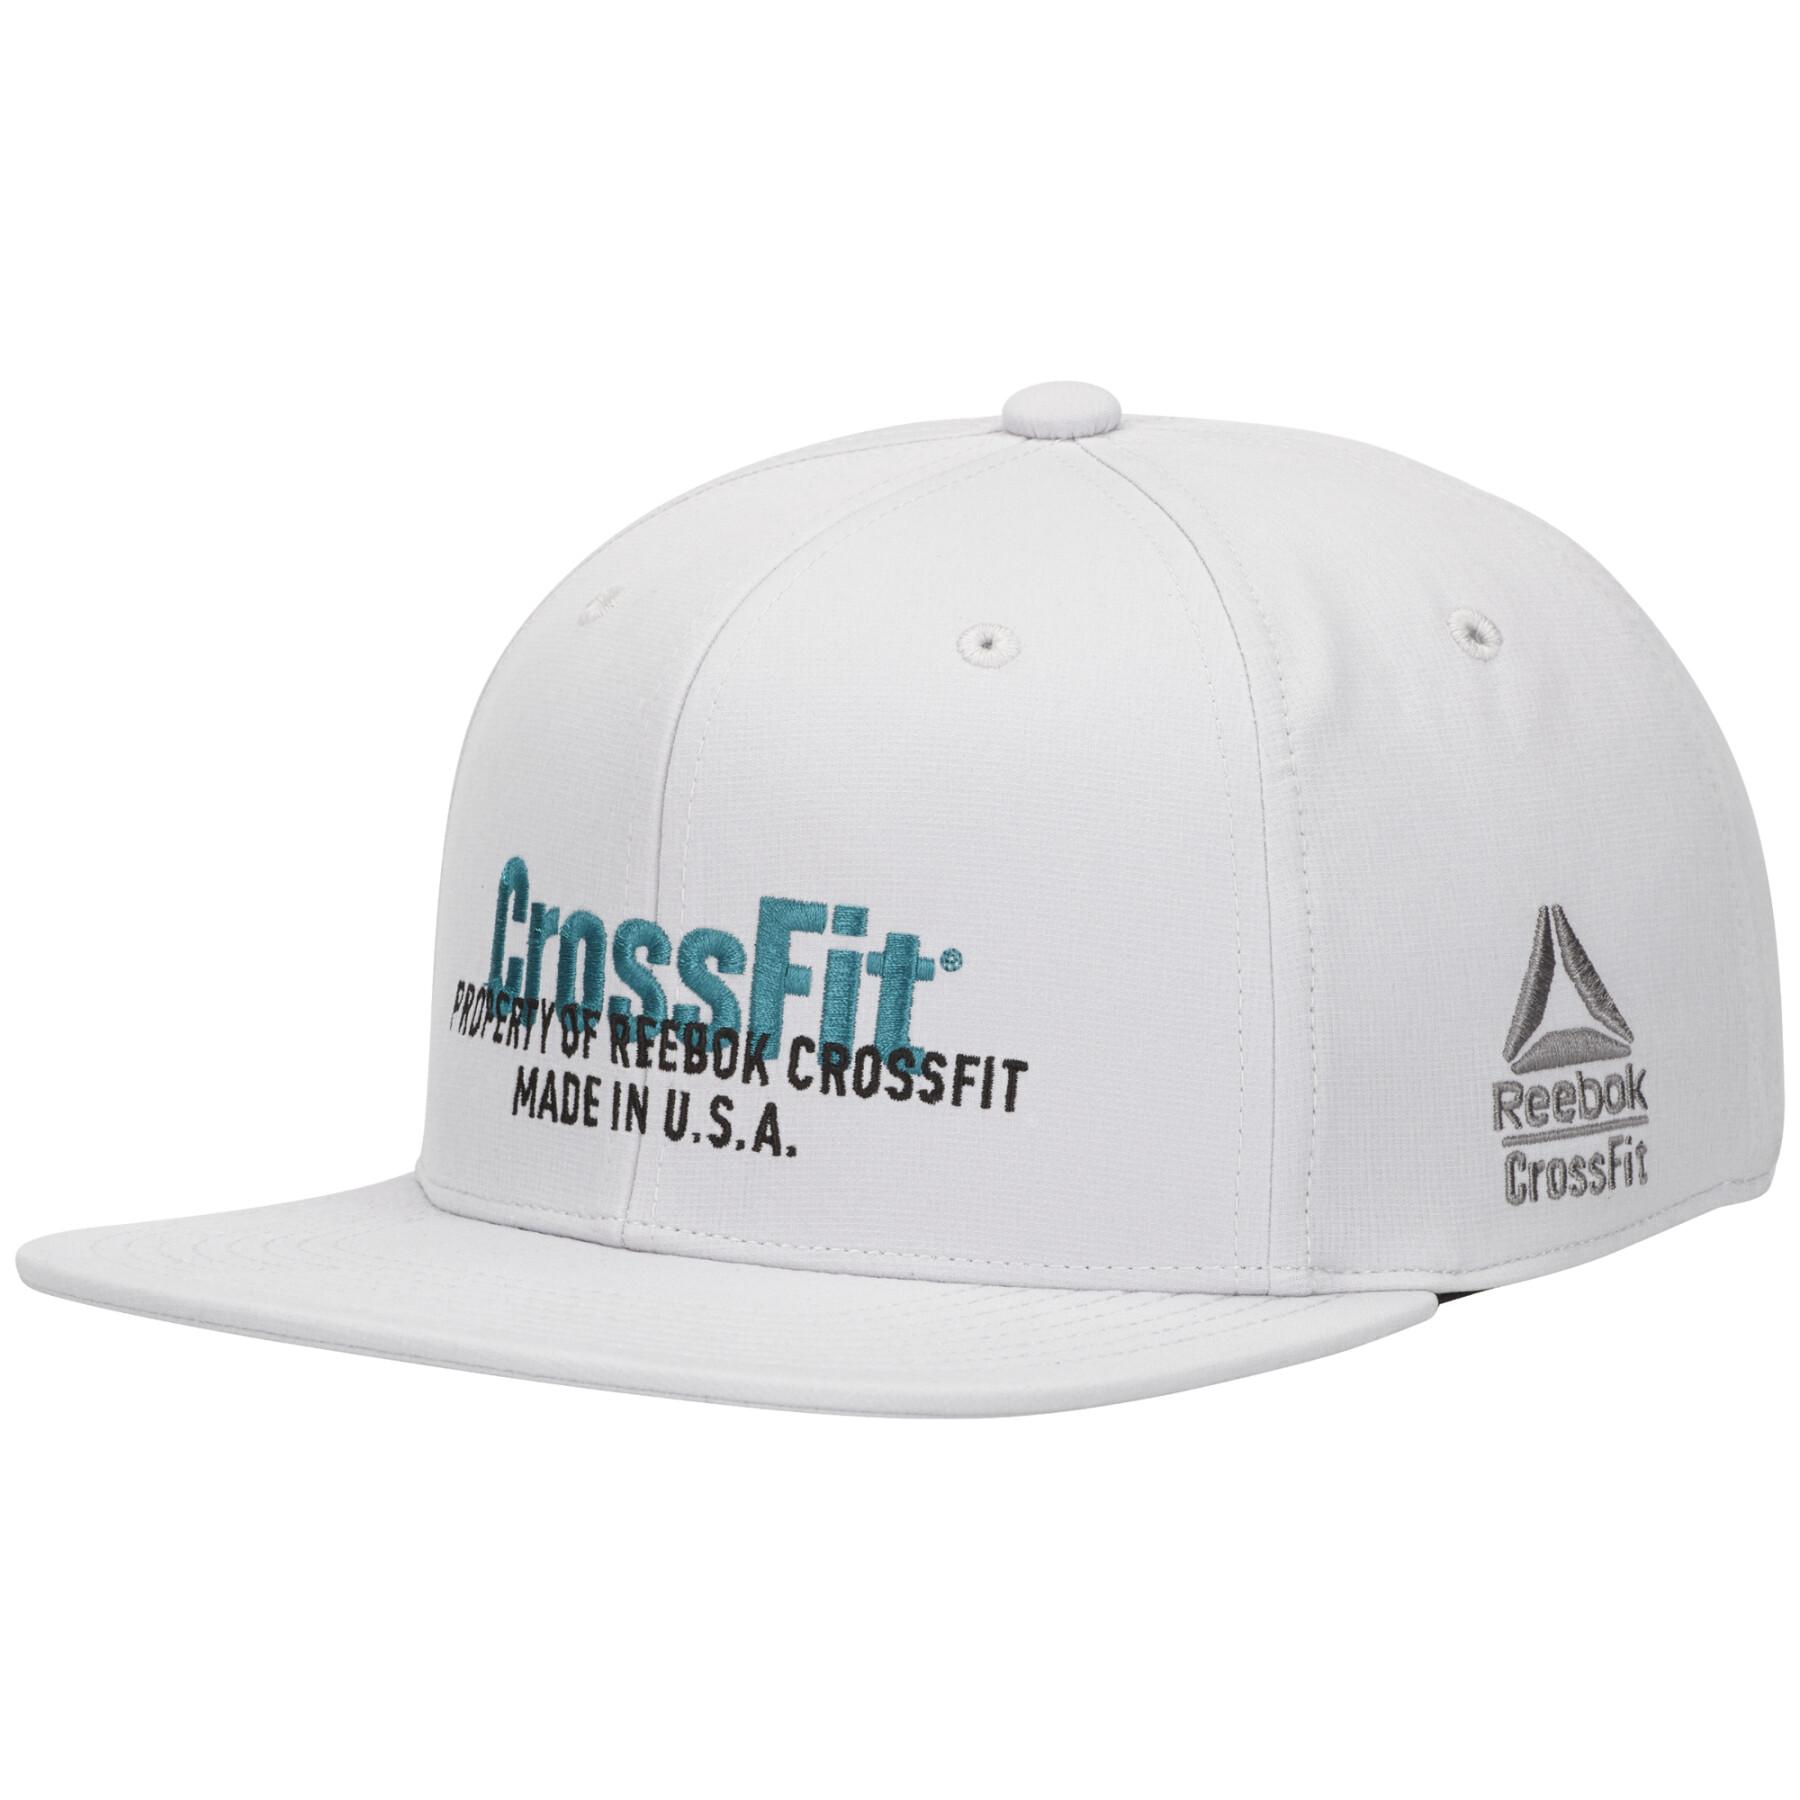 Boné Reebok CrossFit® A-Flex